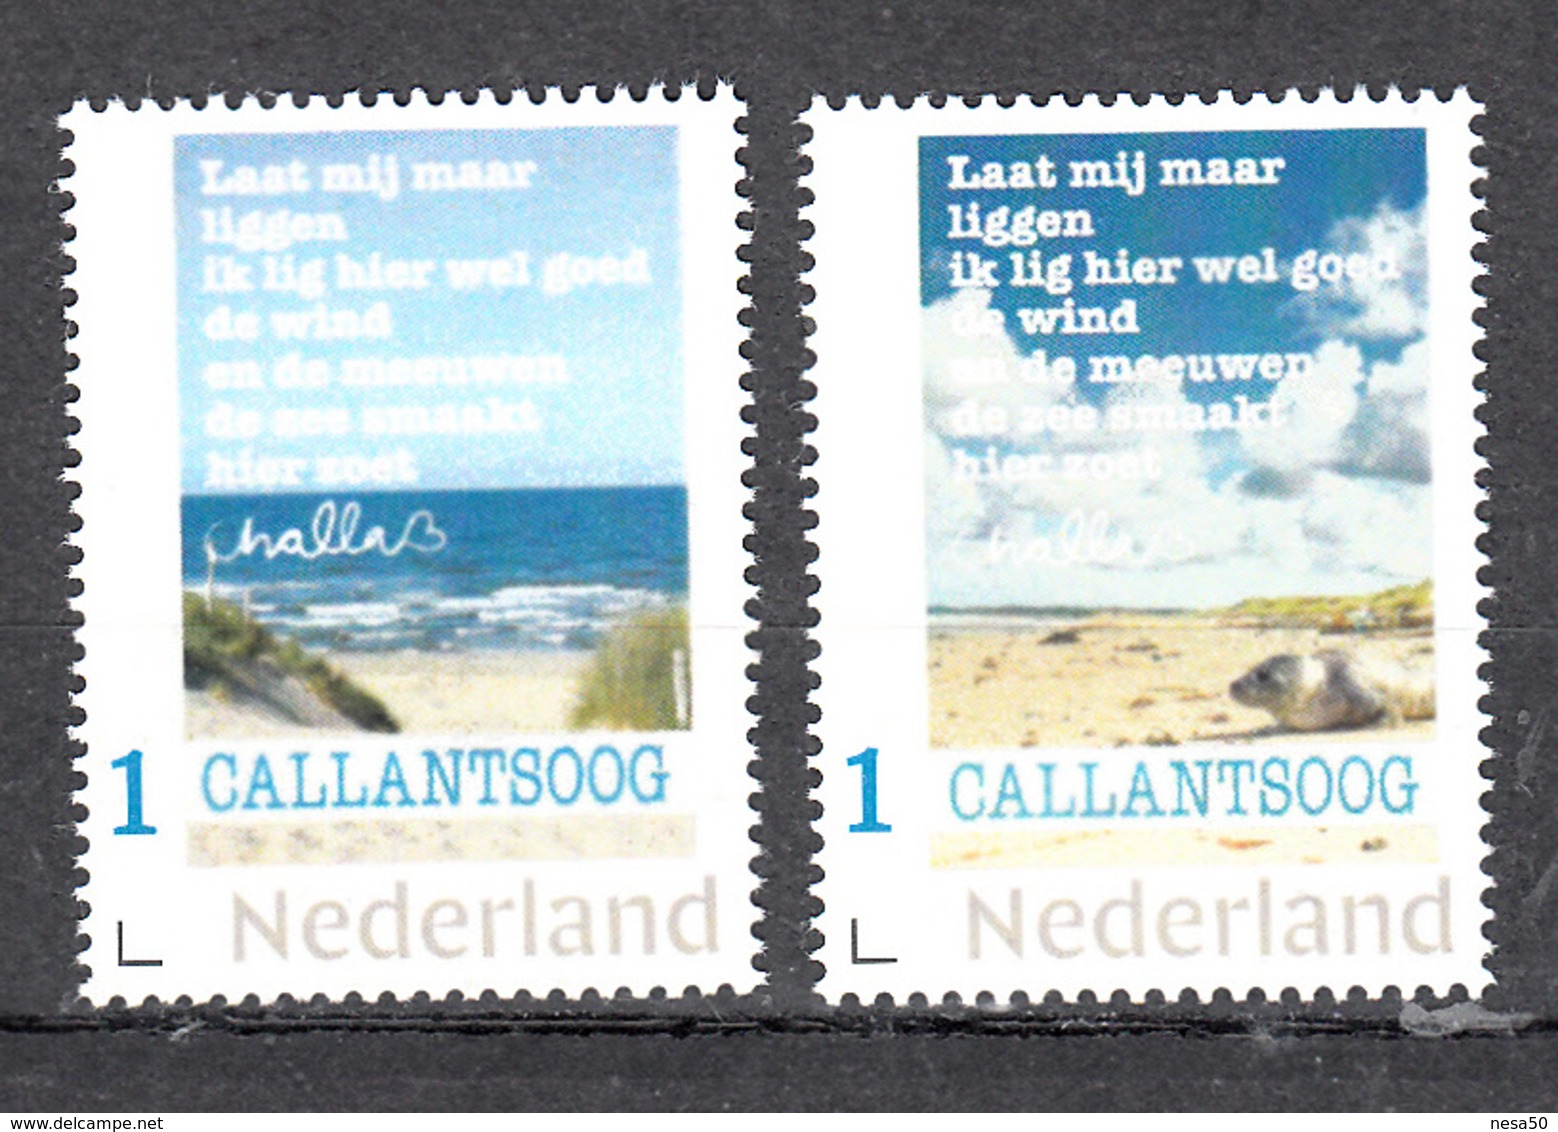 Nederland  Persoonlijke Zegel: Callantsoog 2 Postzegels Van Kunstenaar Challa, Met Zeehond En  Teksten , Gedichten - Unused Stamps